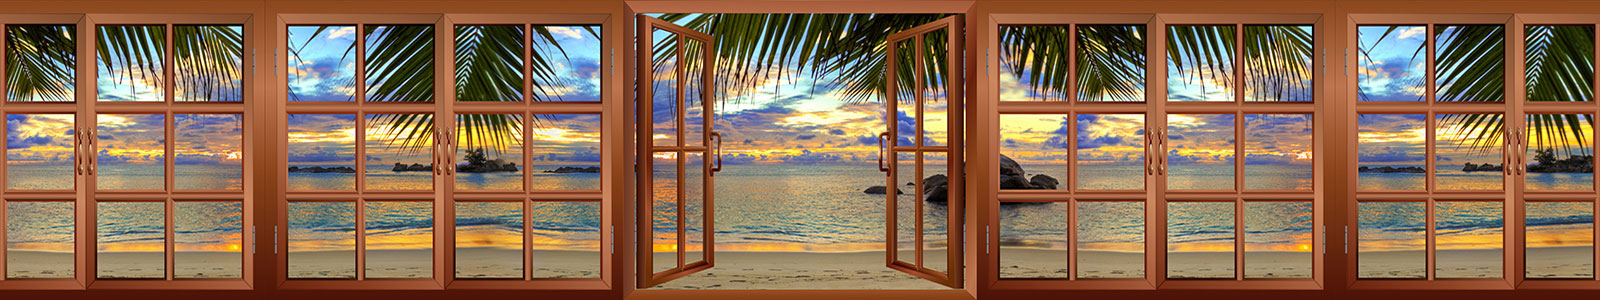 №4701 - Вид из окна на тропический пляж